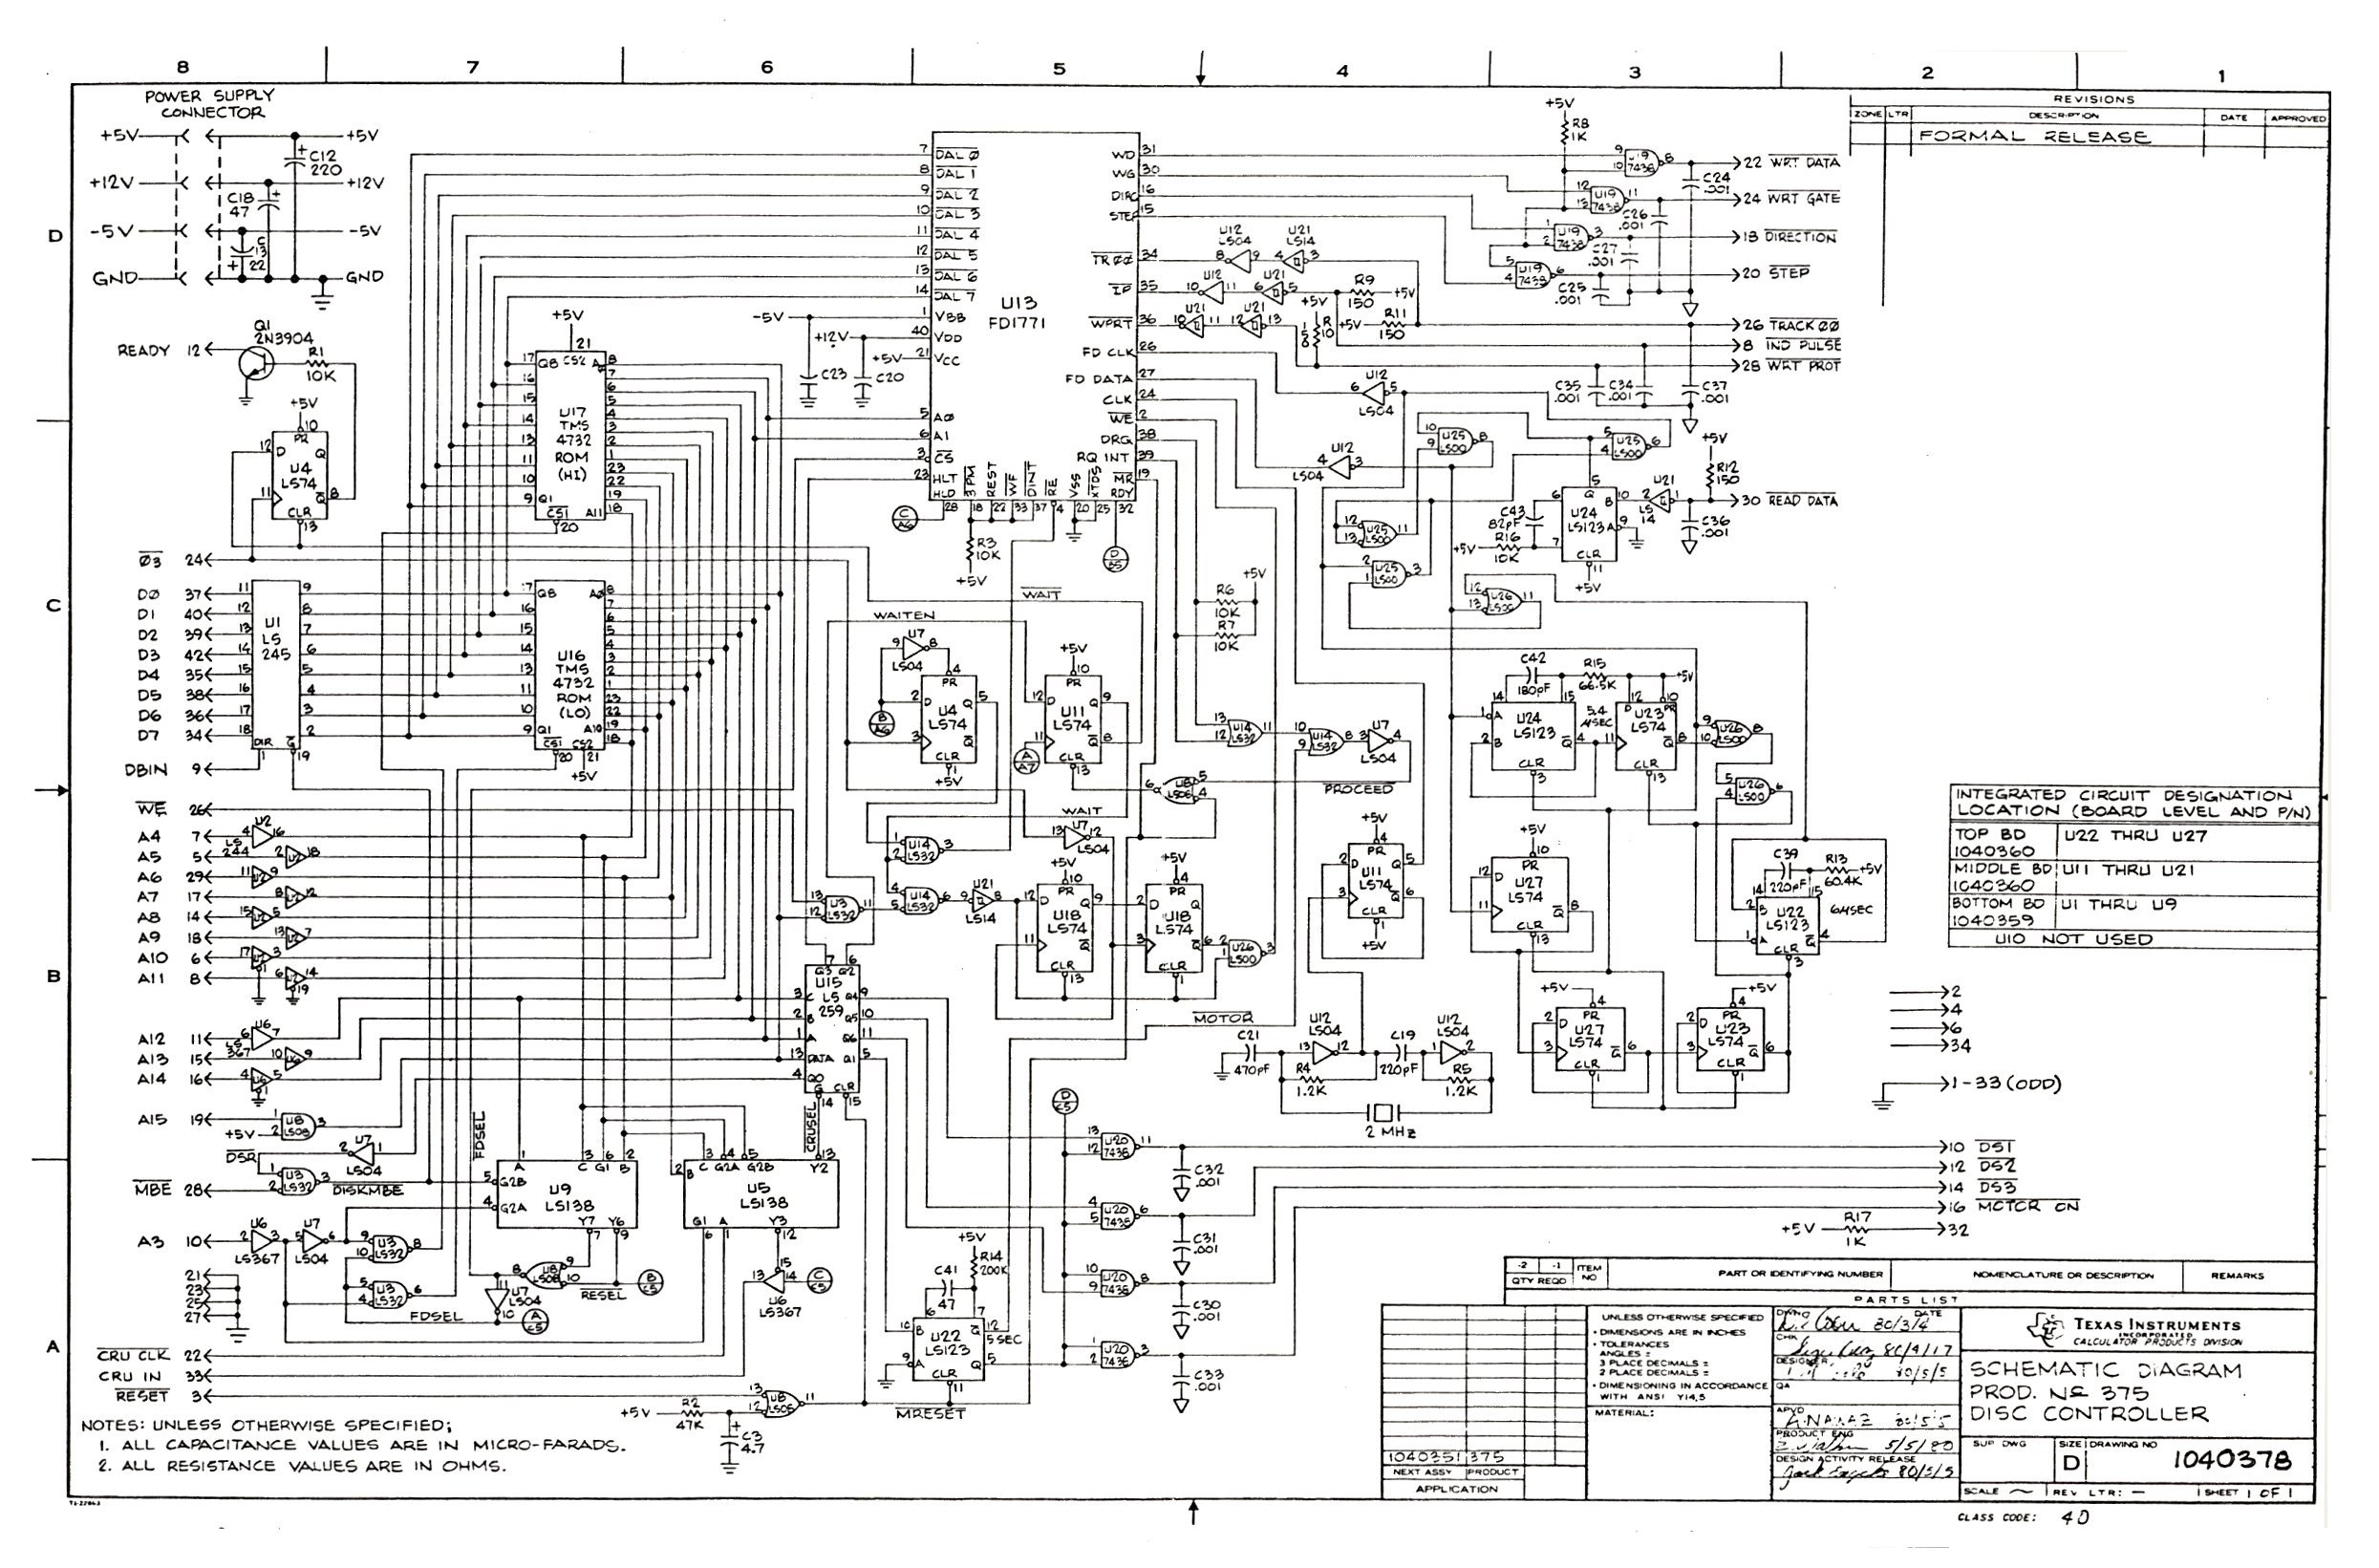 Curtis 1204 Controller Wiring Diagram | Wiring Library - Curtis Controller Wiring Diagram